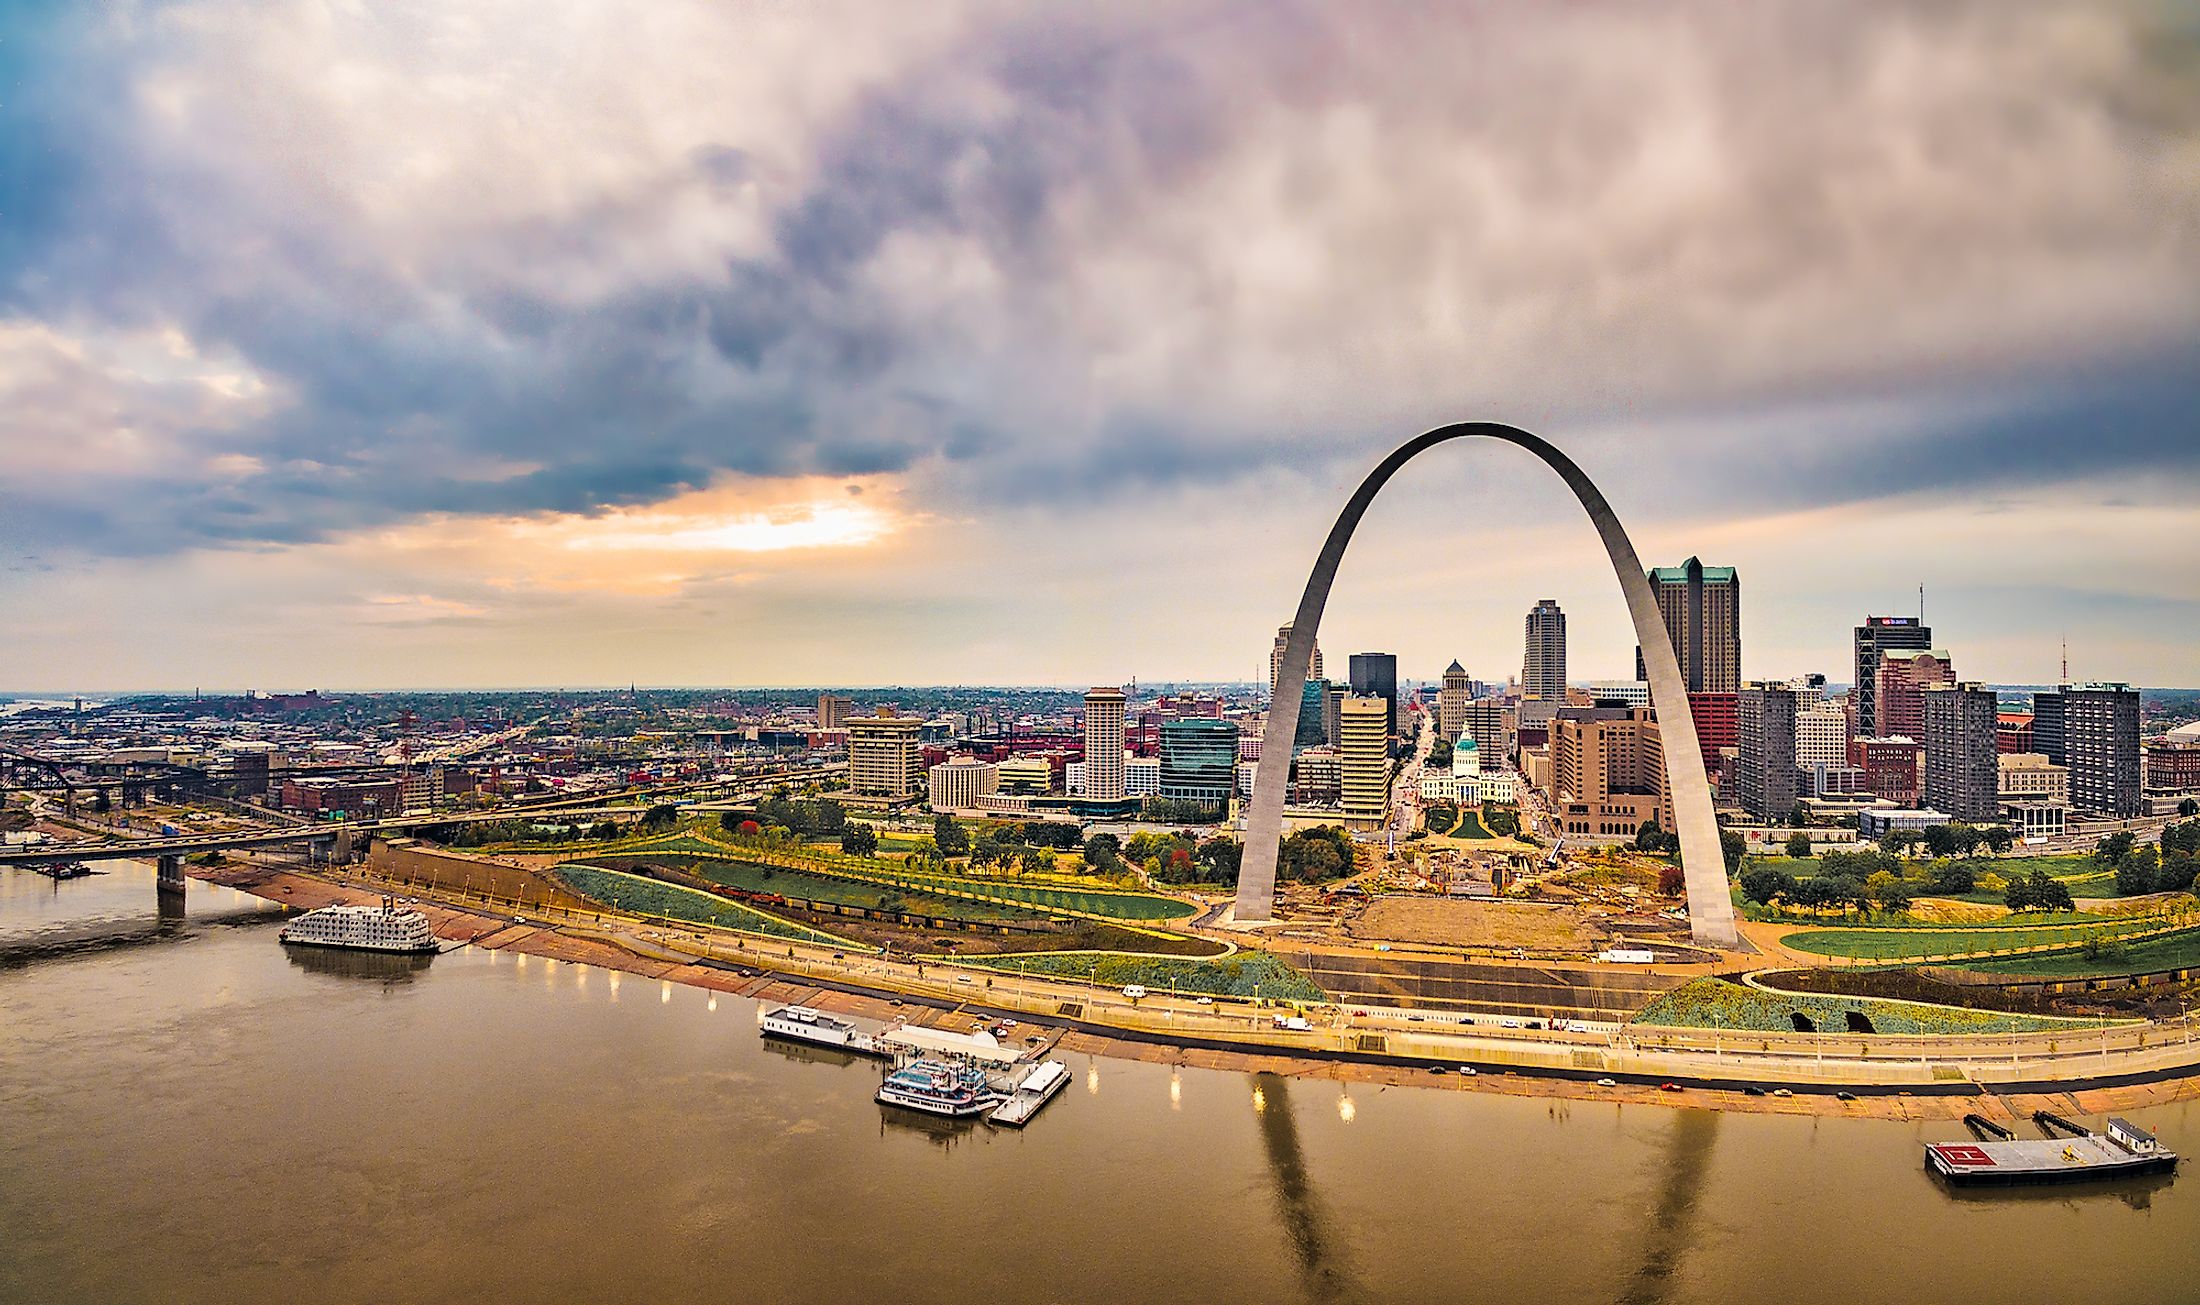 St. Louis, Missouri (U.S.)